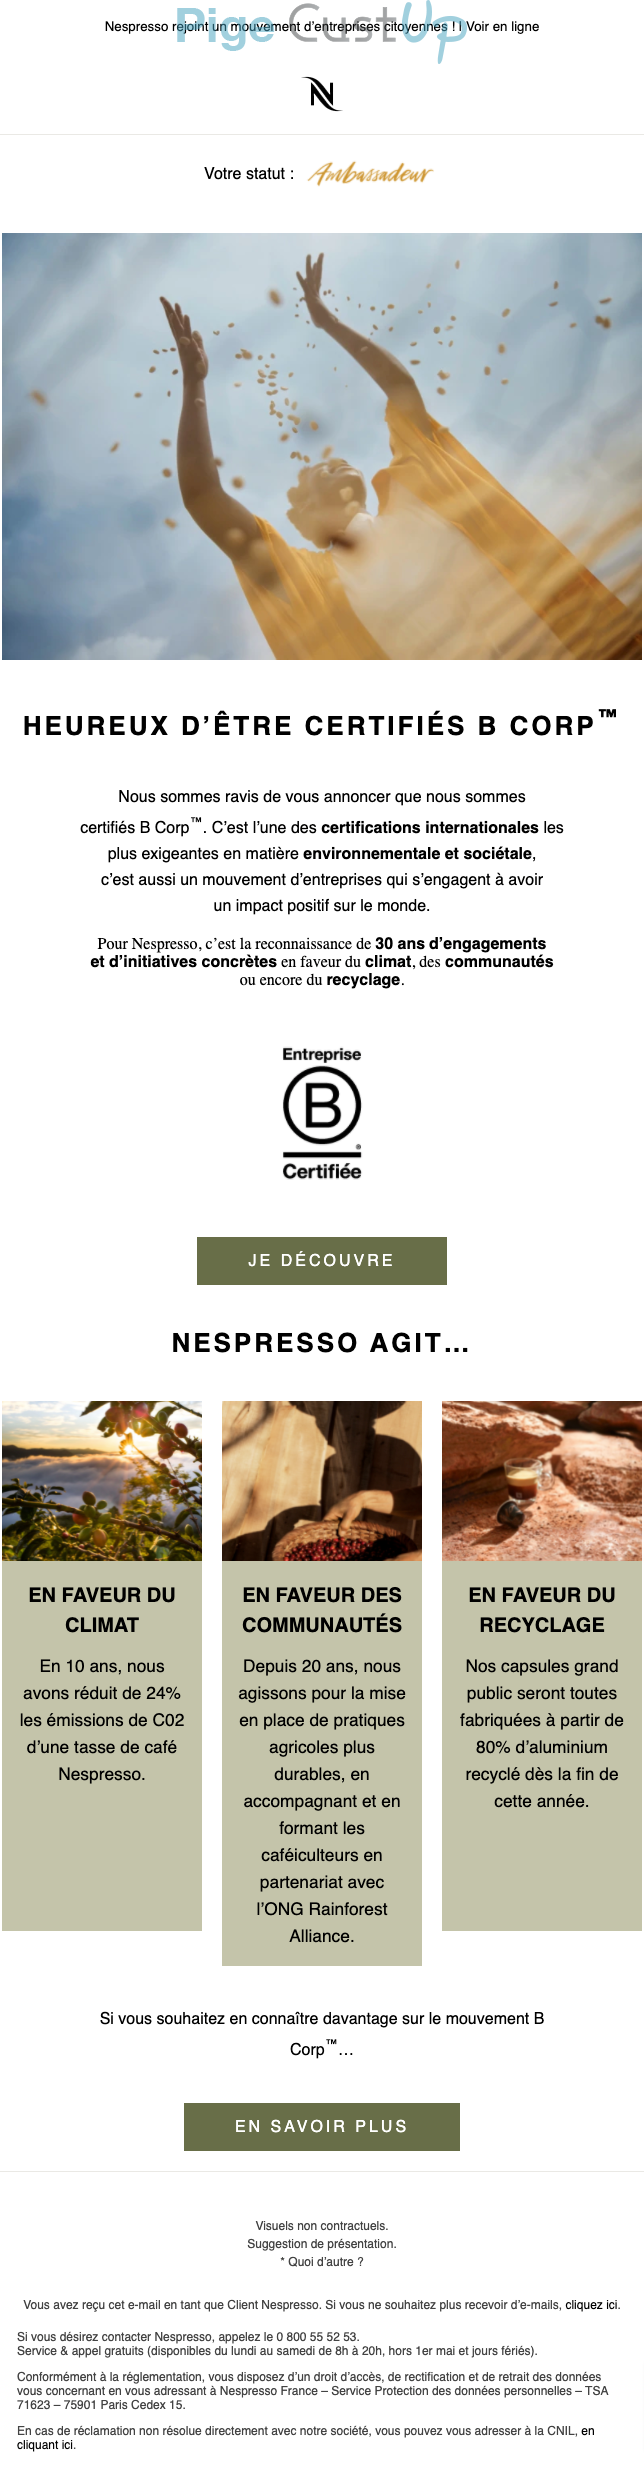 Exemple de Type de media  e-mailing - Nespresso - Marketing marque - Nom de marque